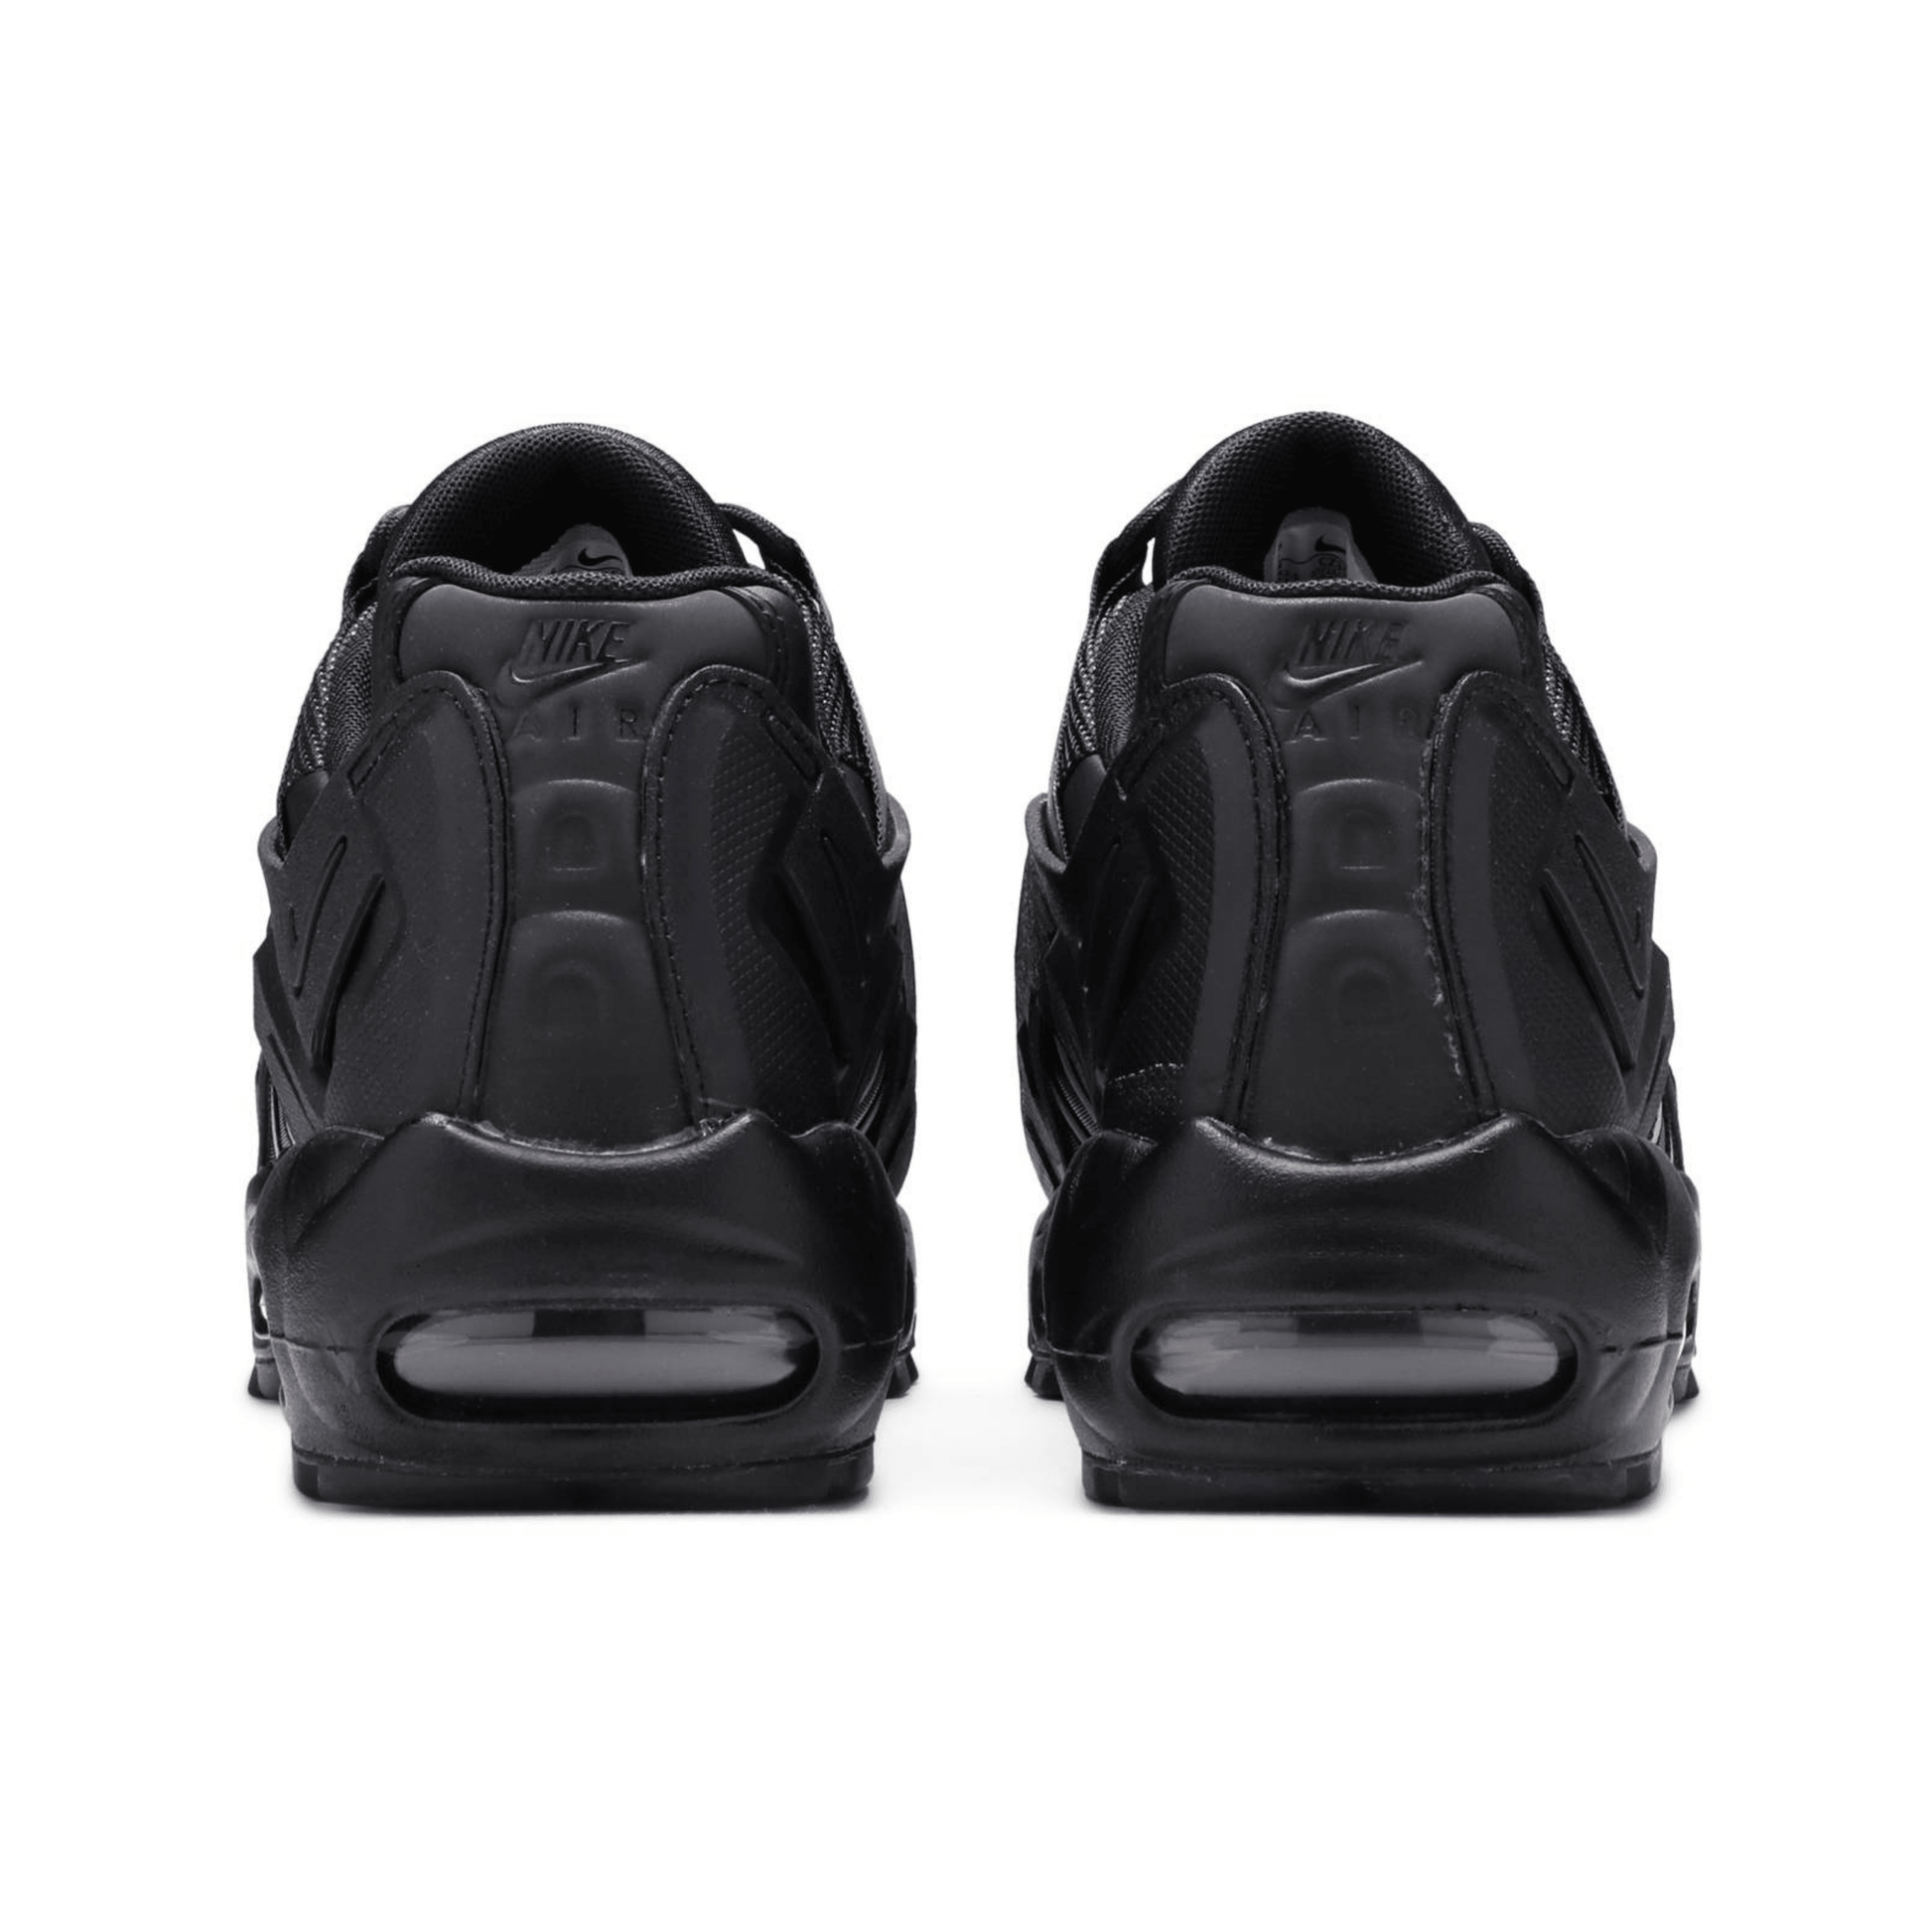 Nike Air Max 95 NDSTRKT in Triple Black - FRESNEAKERS